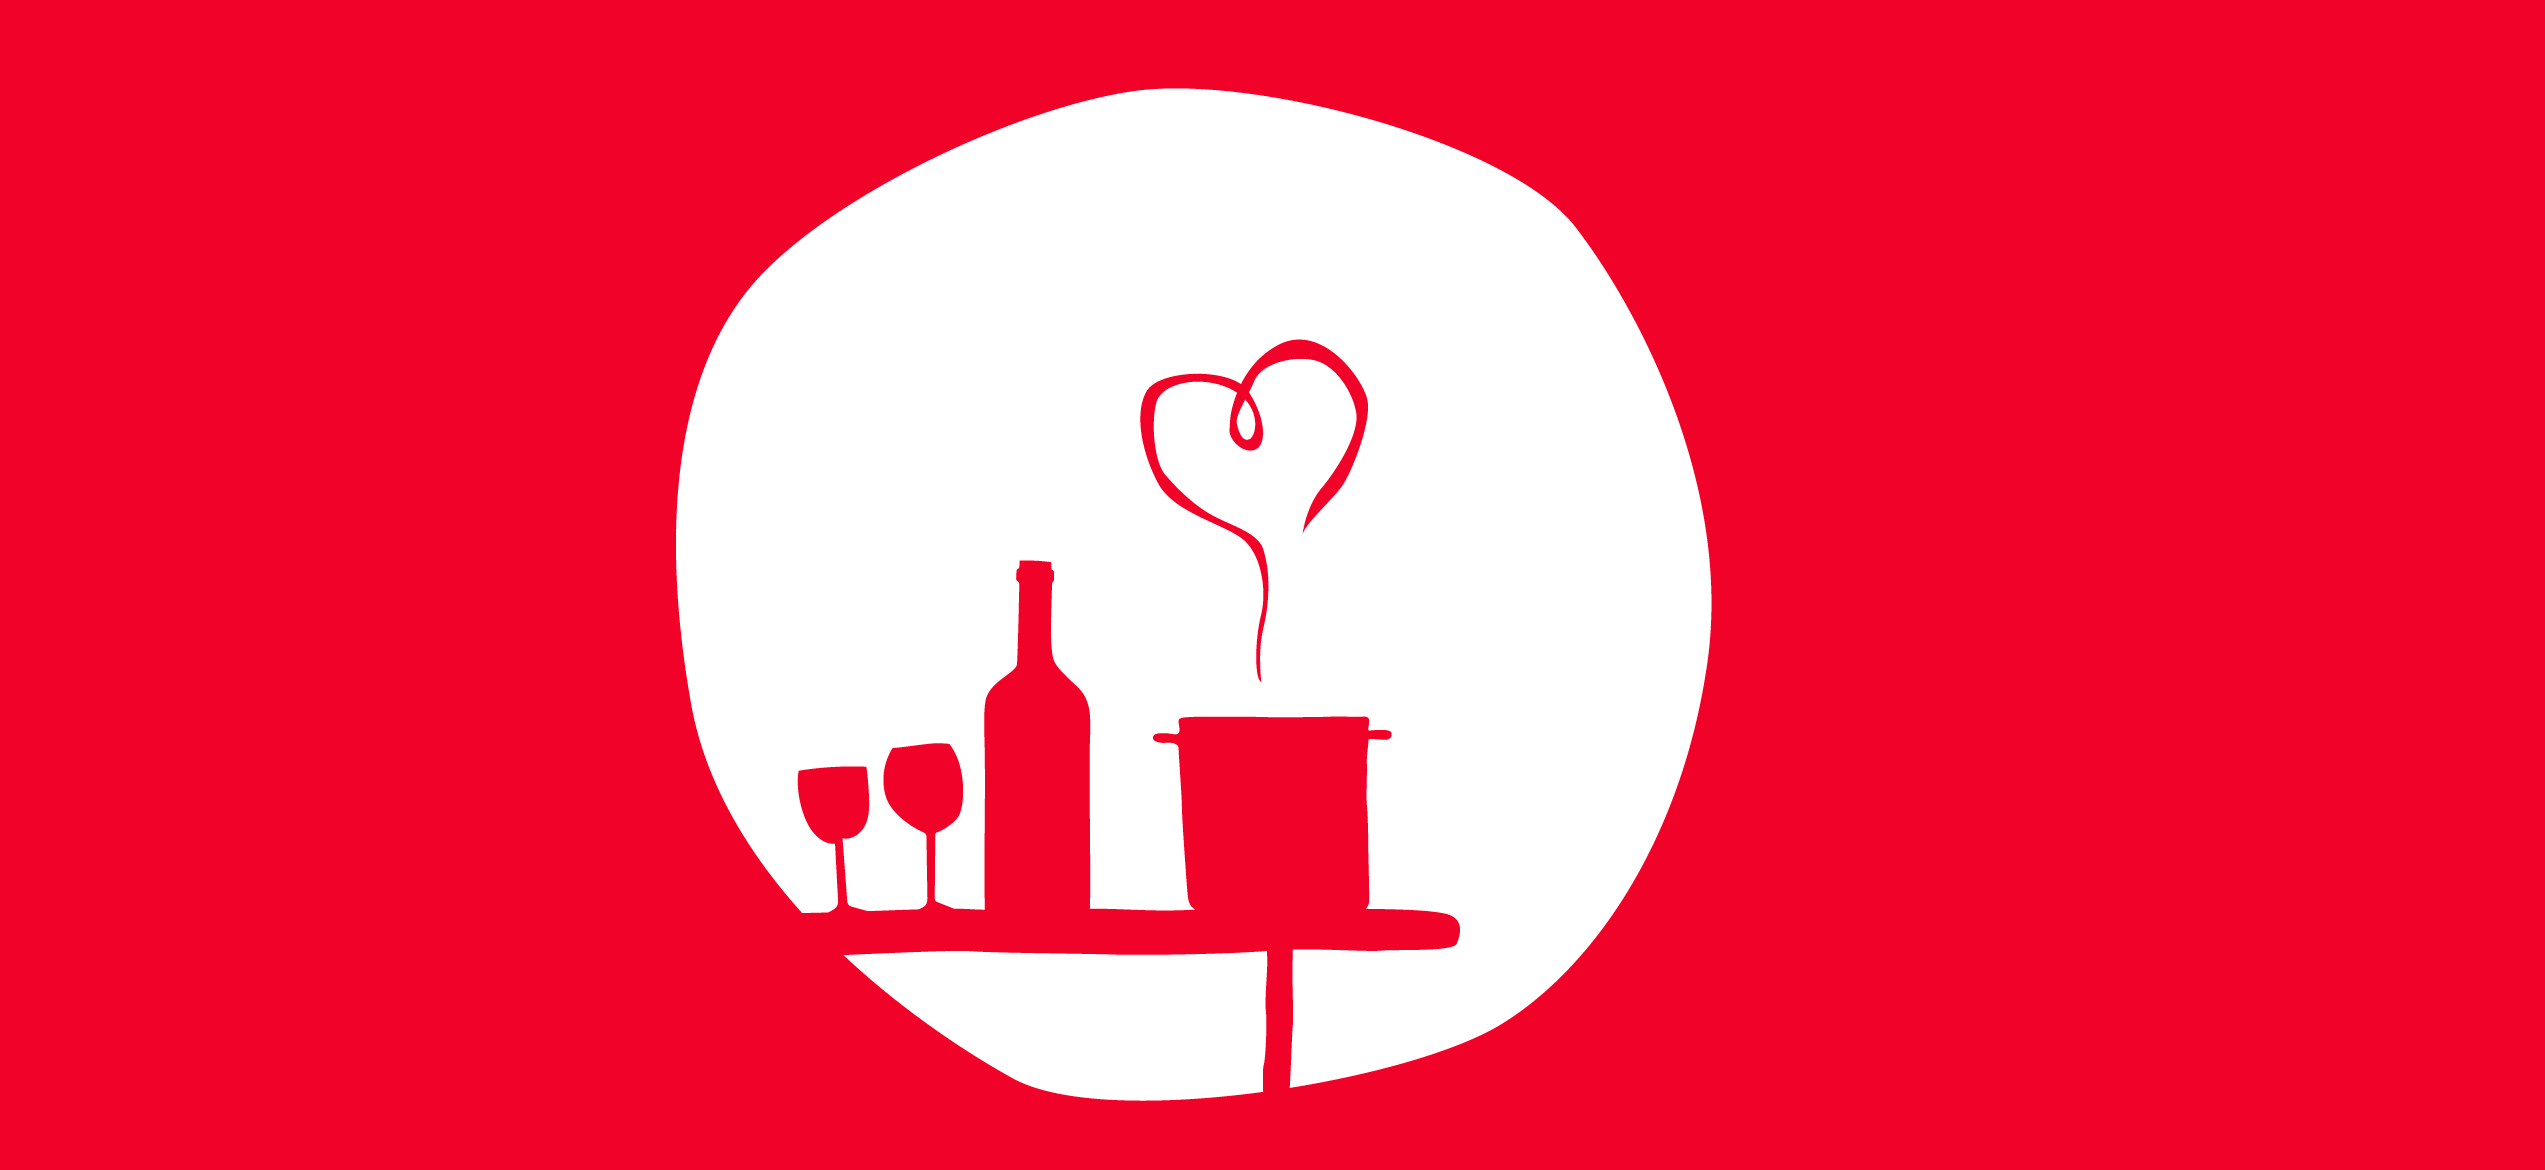 Logo rouge et blanc représentant des verres de vins, une bouteille et une casserole fumante posés sur une table